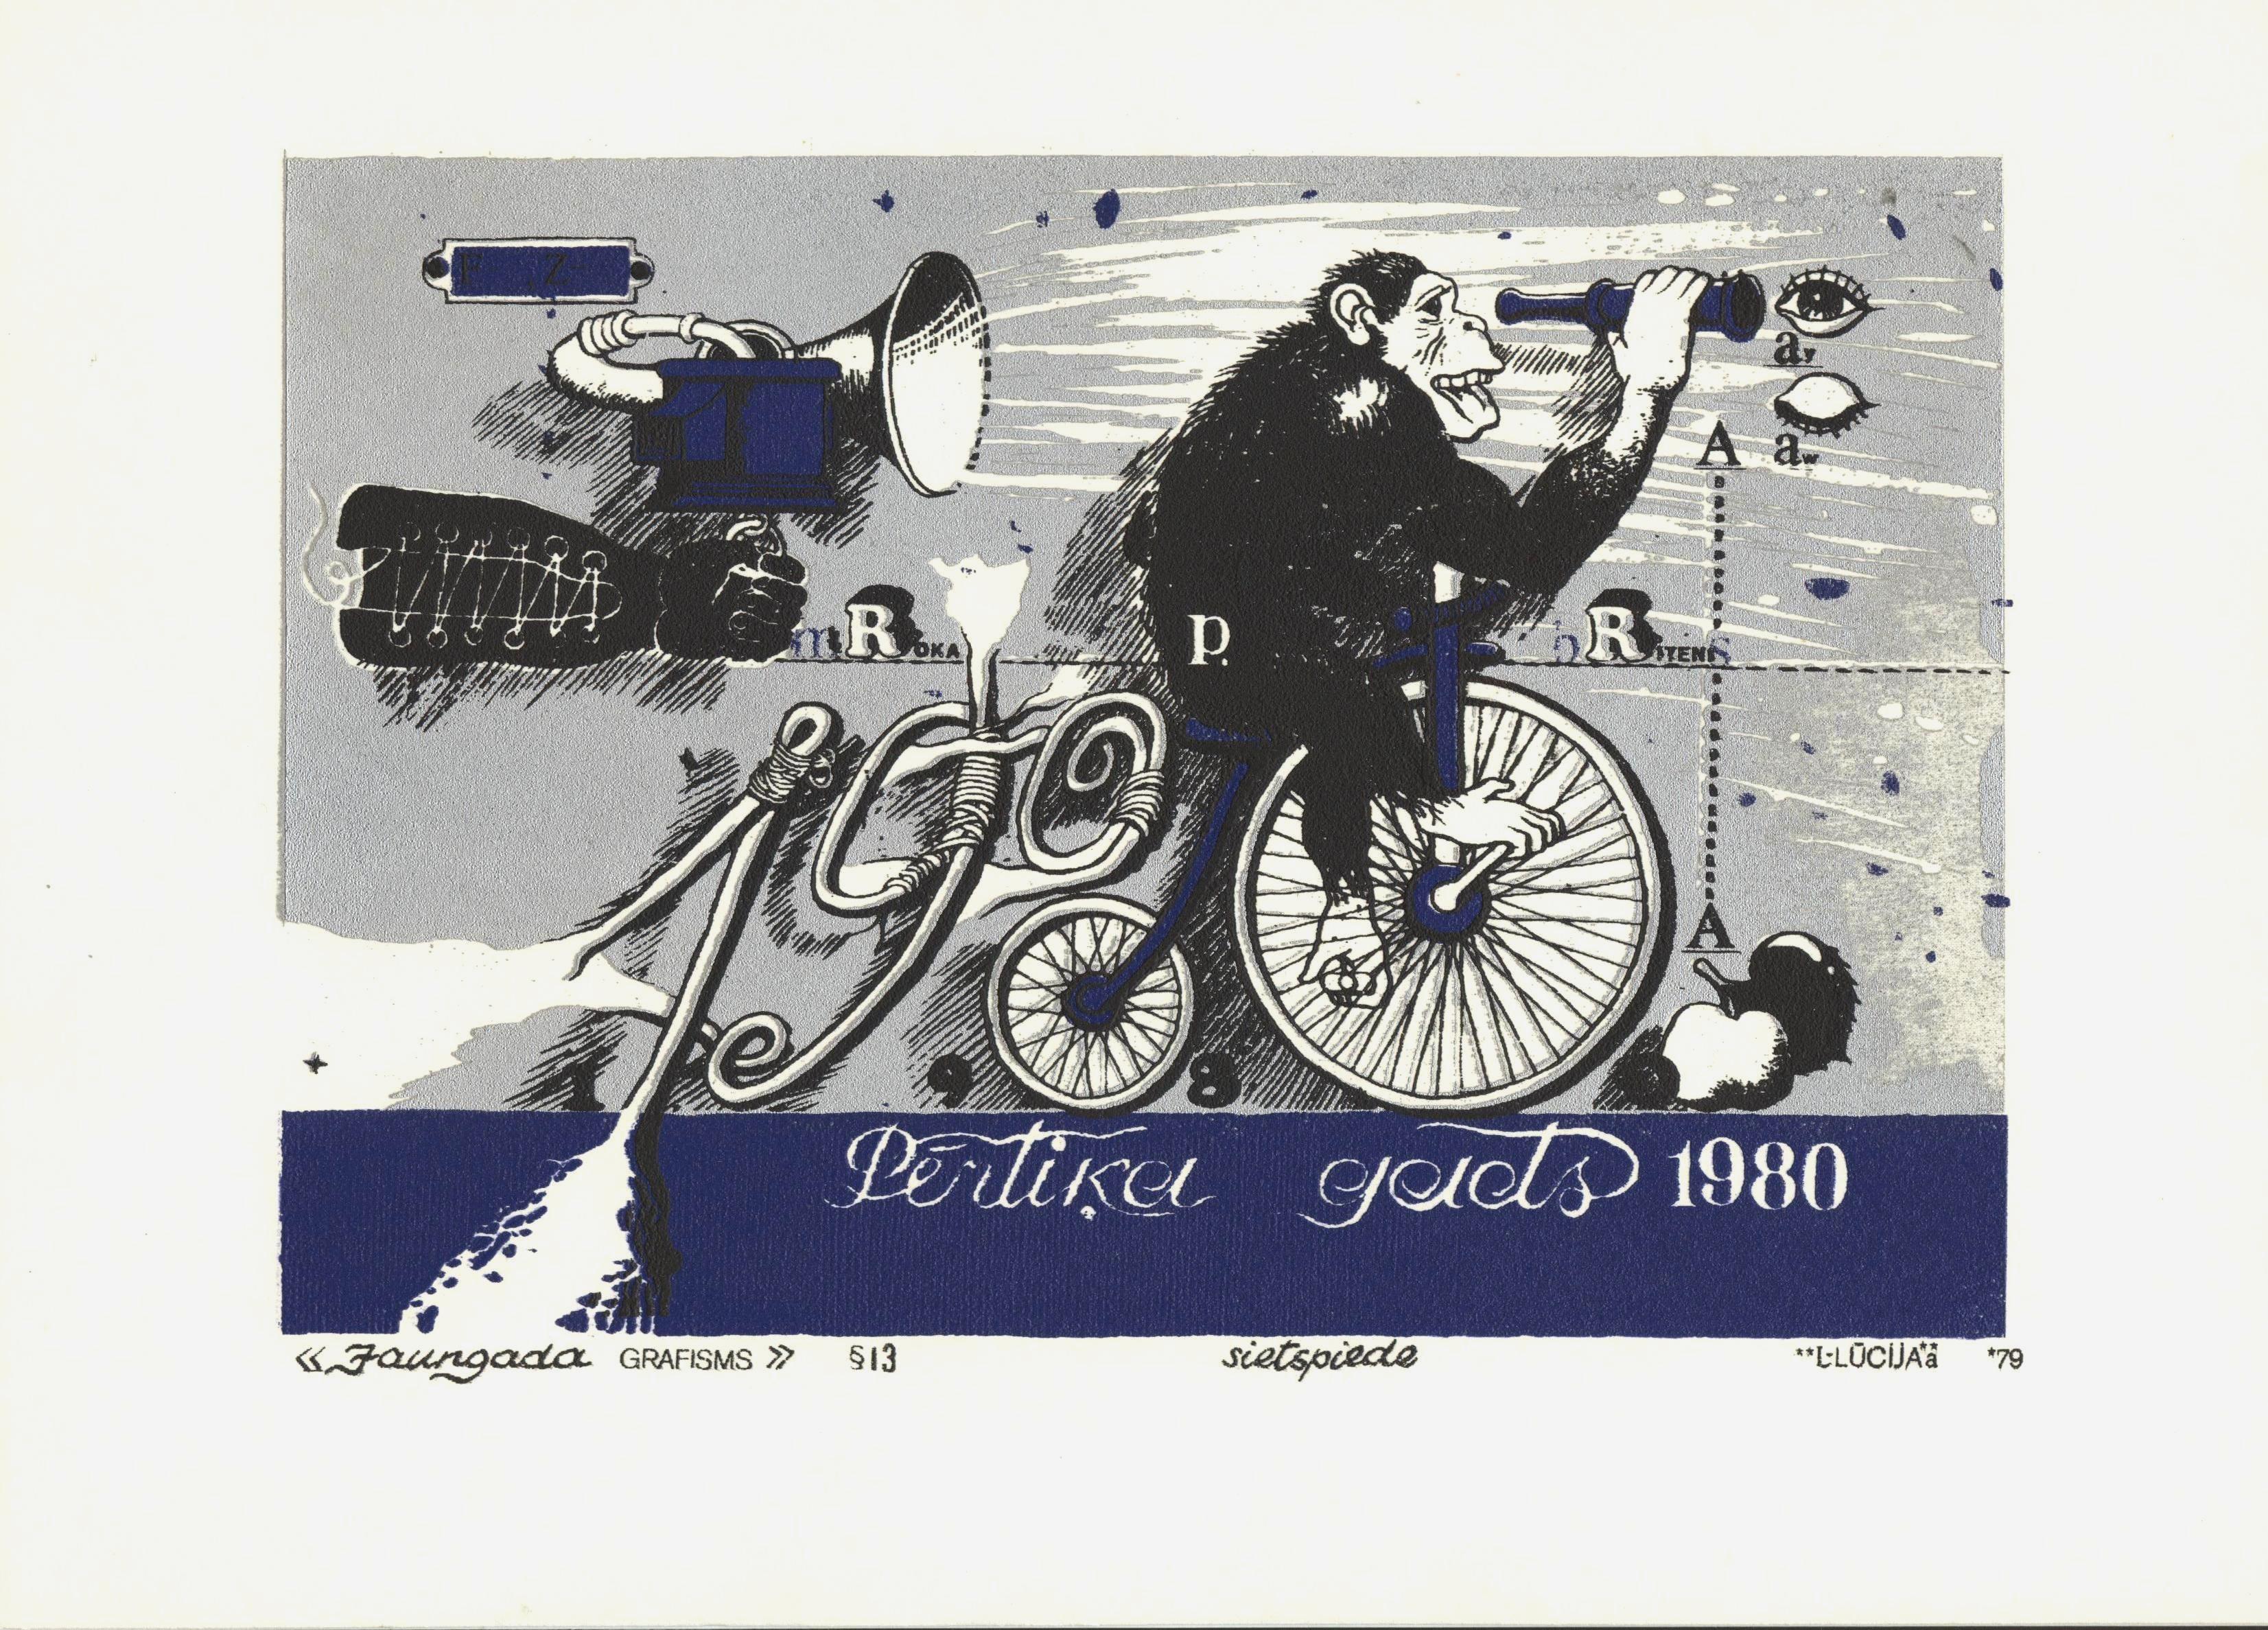 « The New Year graphisms & 13, 1979, papier, écran de soie, 15,5 x 21,5 cm - Print de Maris Argalis